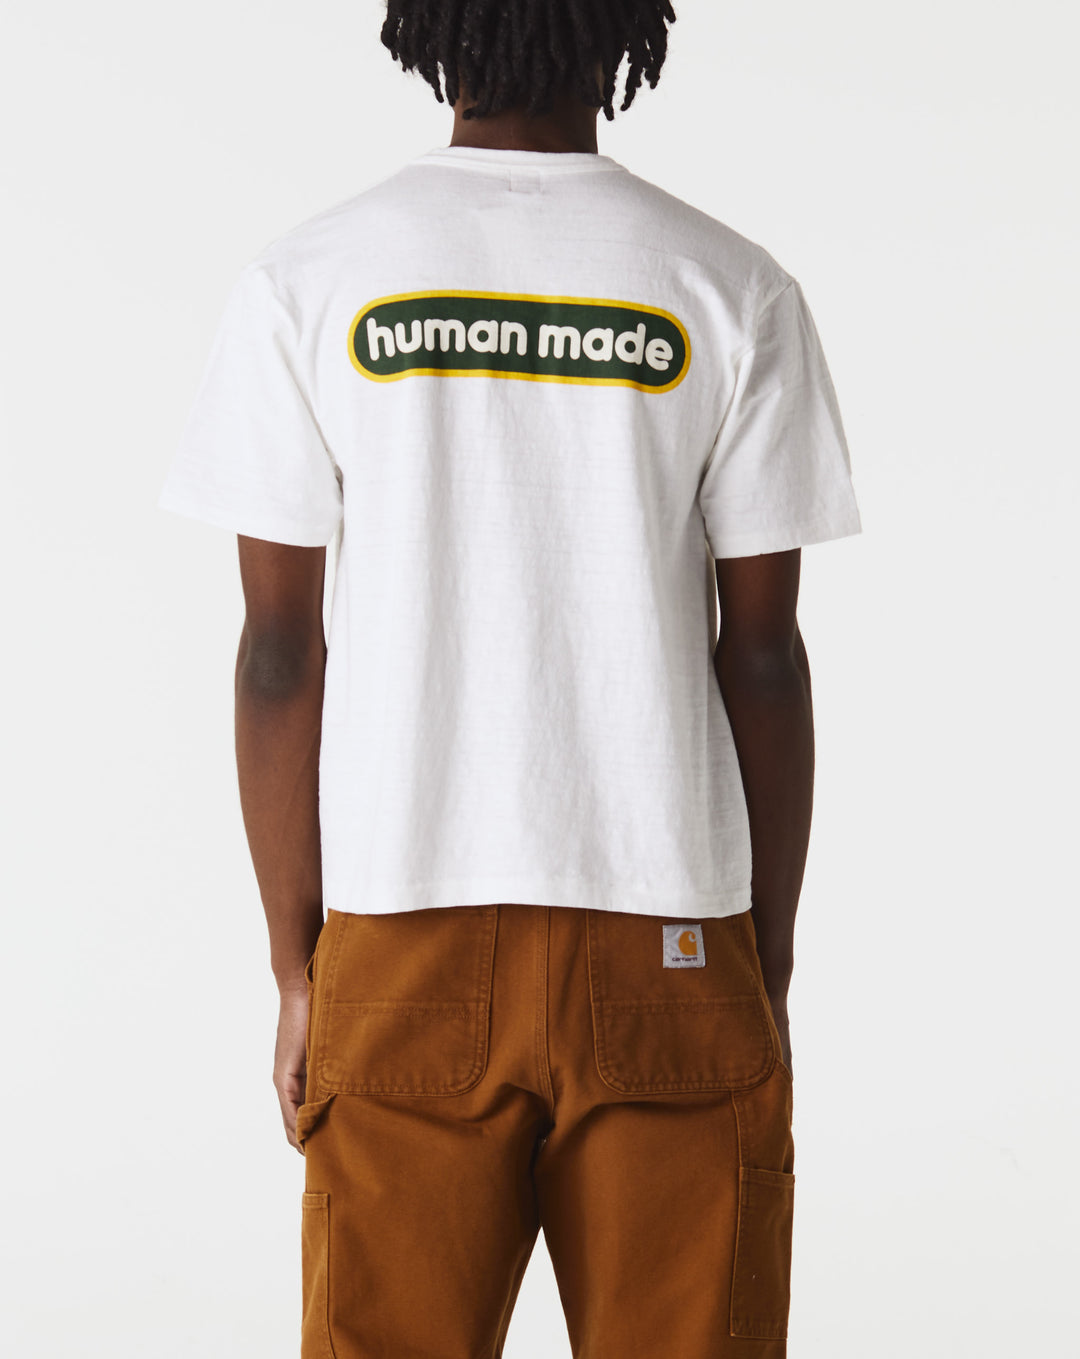 Human Made Alfred Shirt Jacket  - Cheap Urlfreeze Jordan outlet